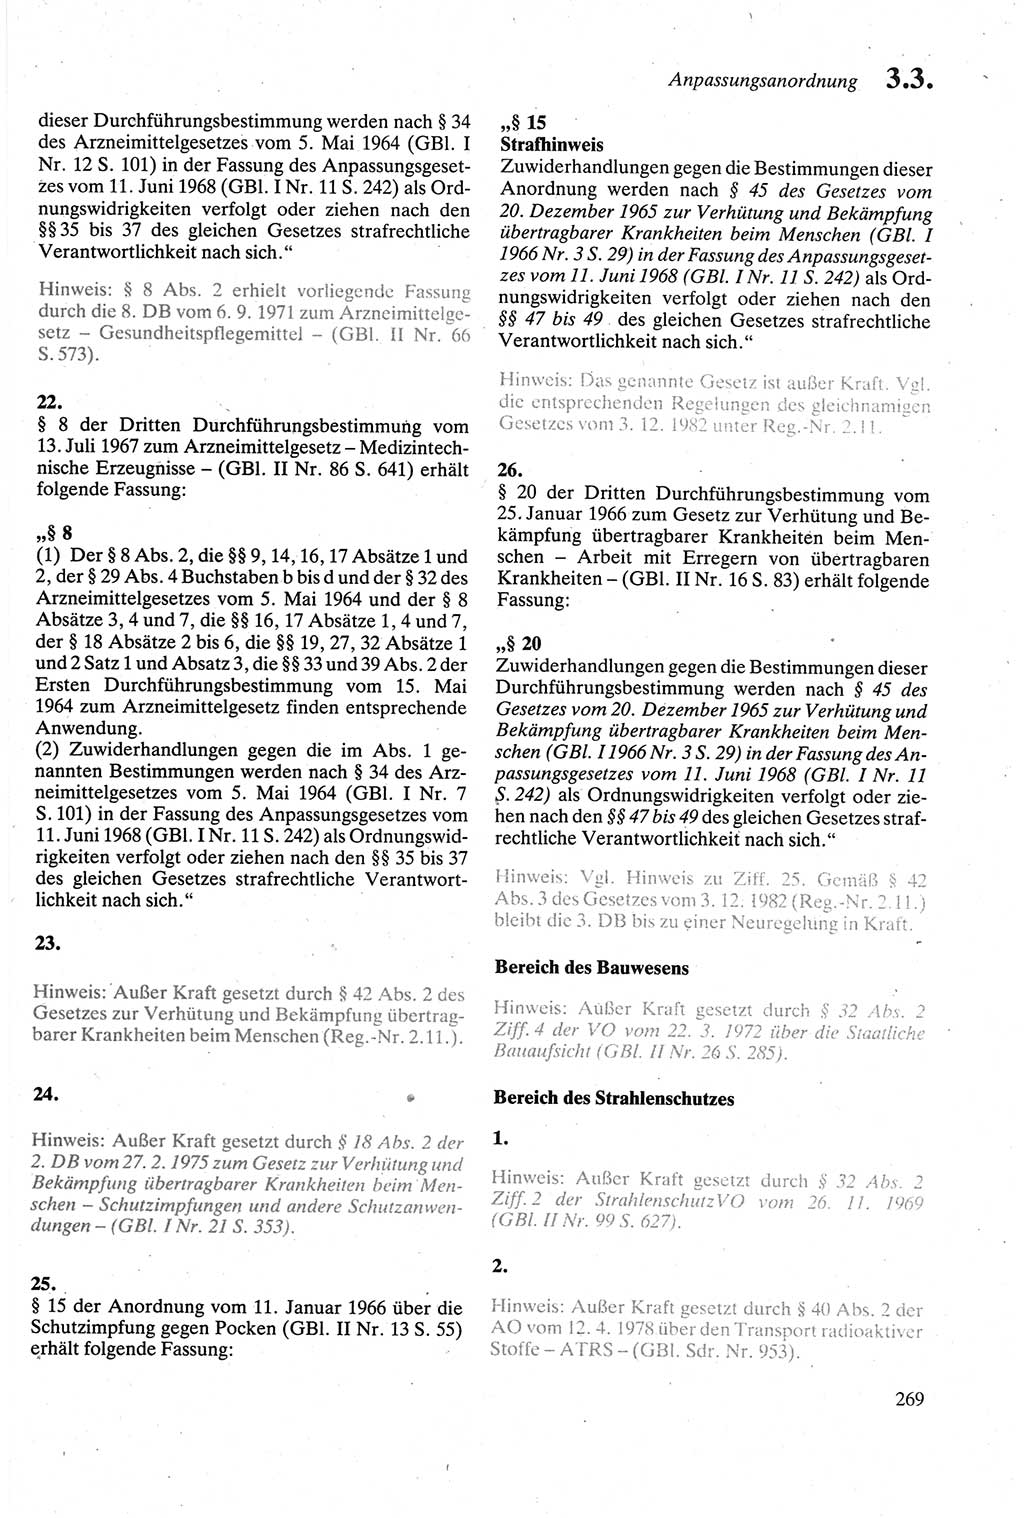 Strafgesetzbuch (StGB) der Deutschen Demokratischen Republik (DDR) sowie angrenzende Gesetze und Bestimmungen 1979, Seite 269 (StGB DDR Ges. Best. 1979, S. 269)